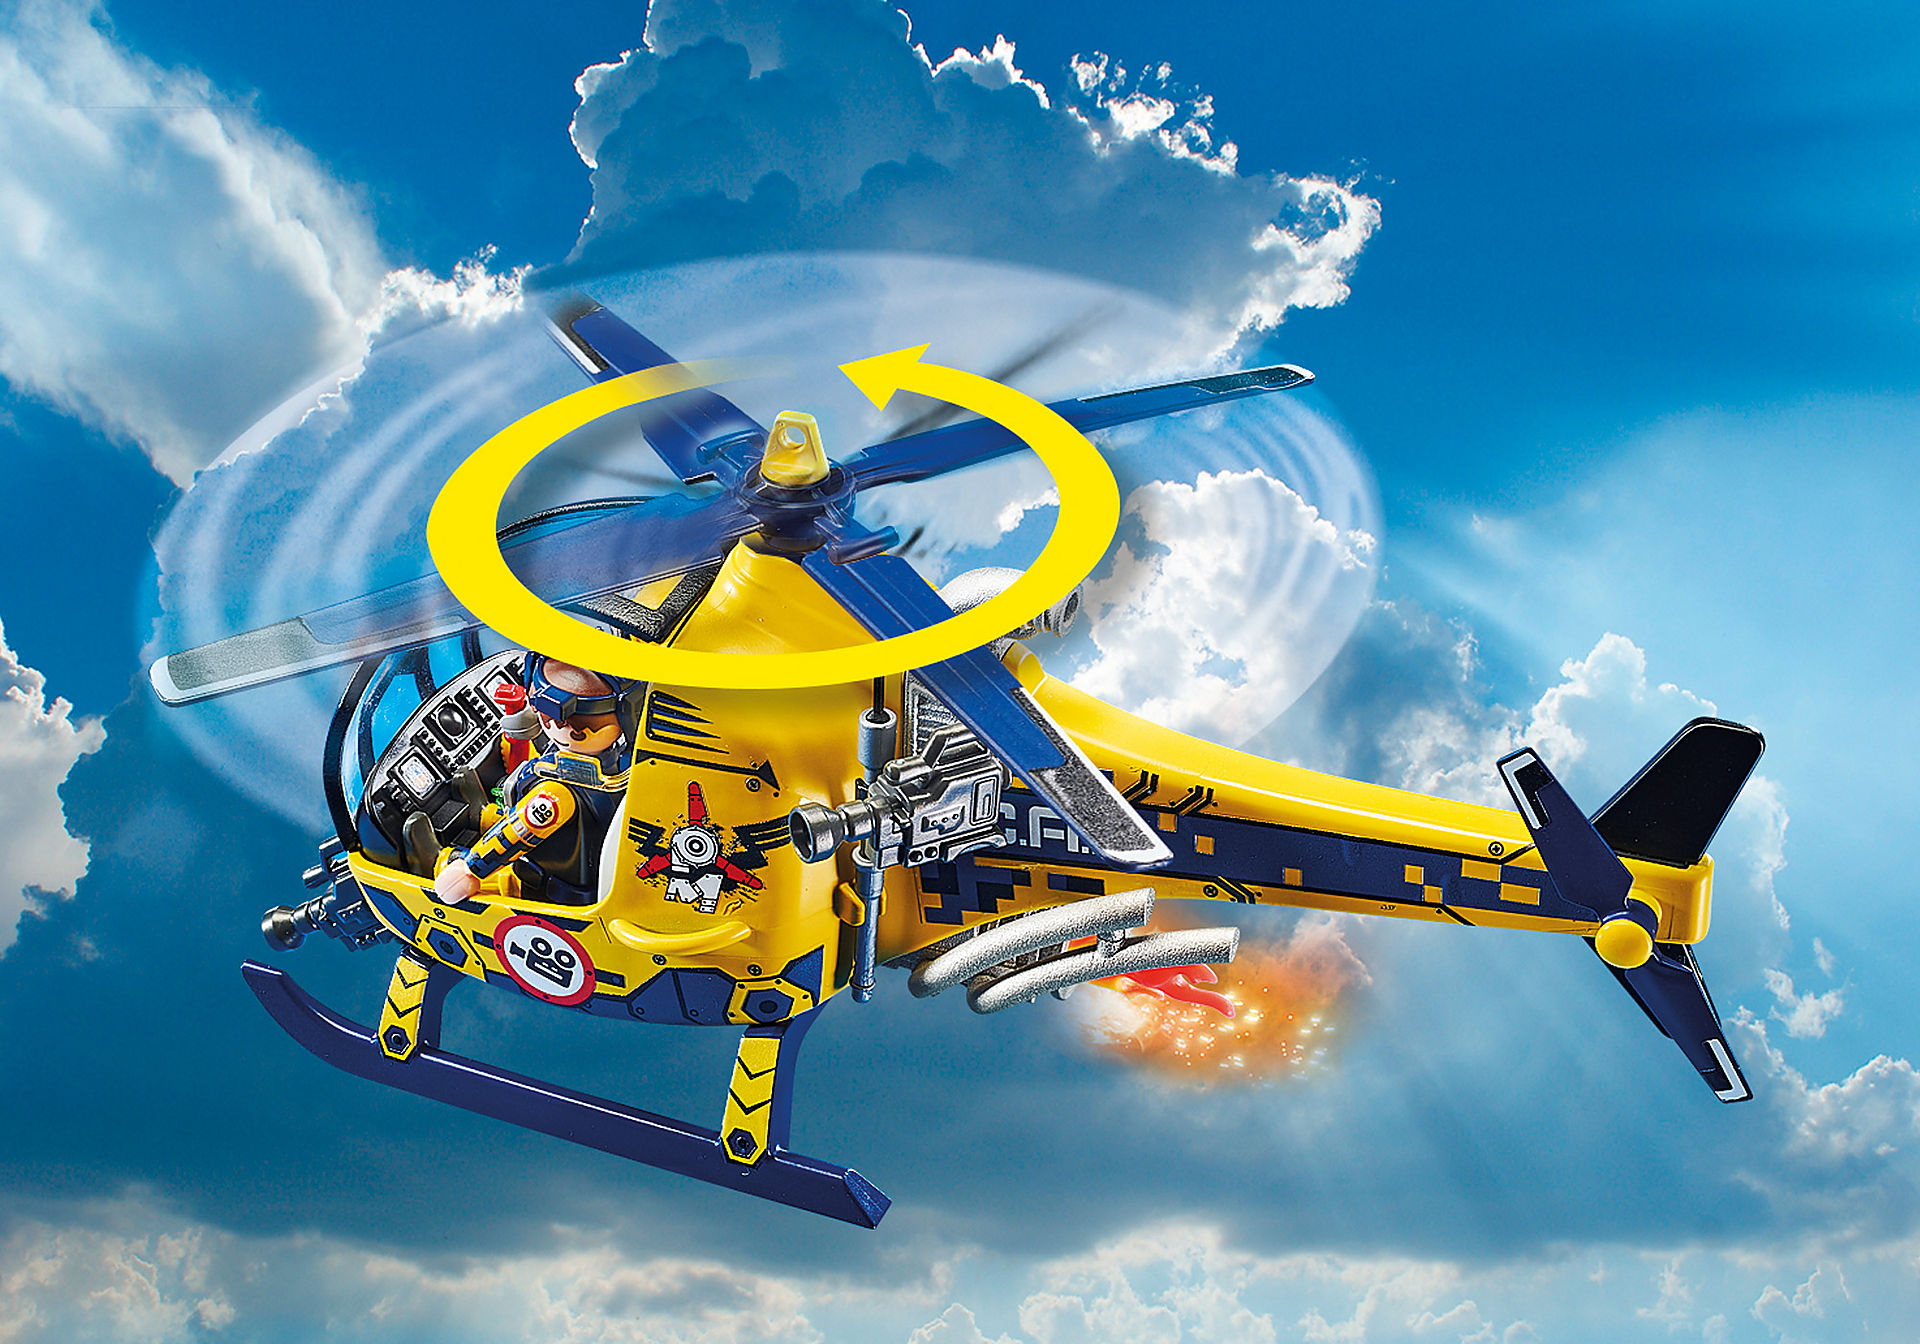 70833 Air Stunt Show Elicottero con troupe per le riprese zoom image5